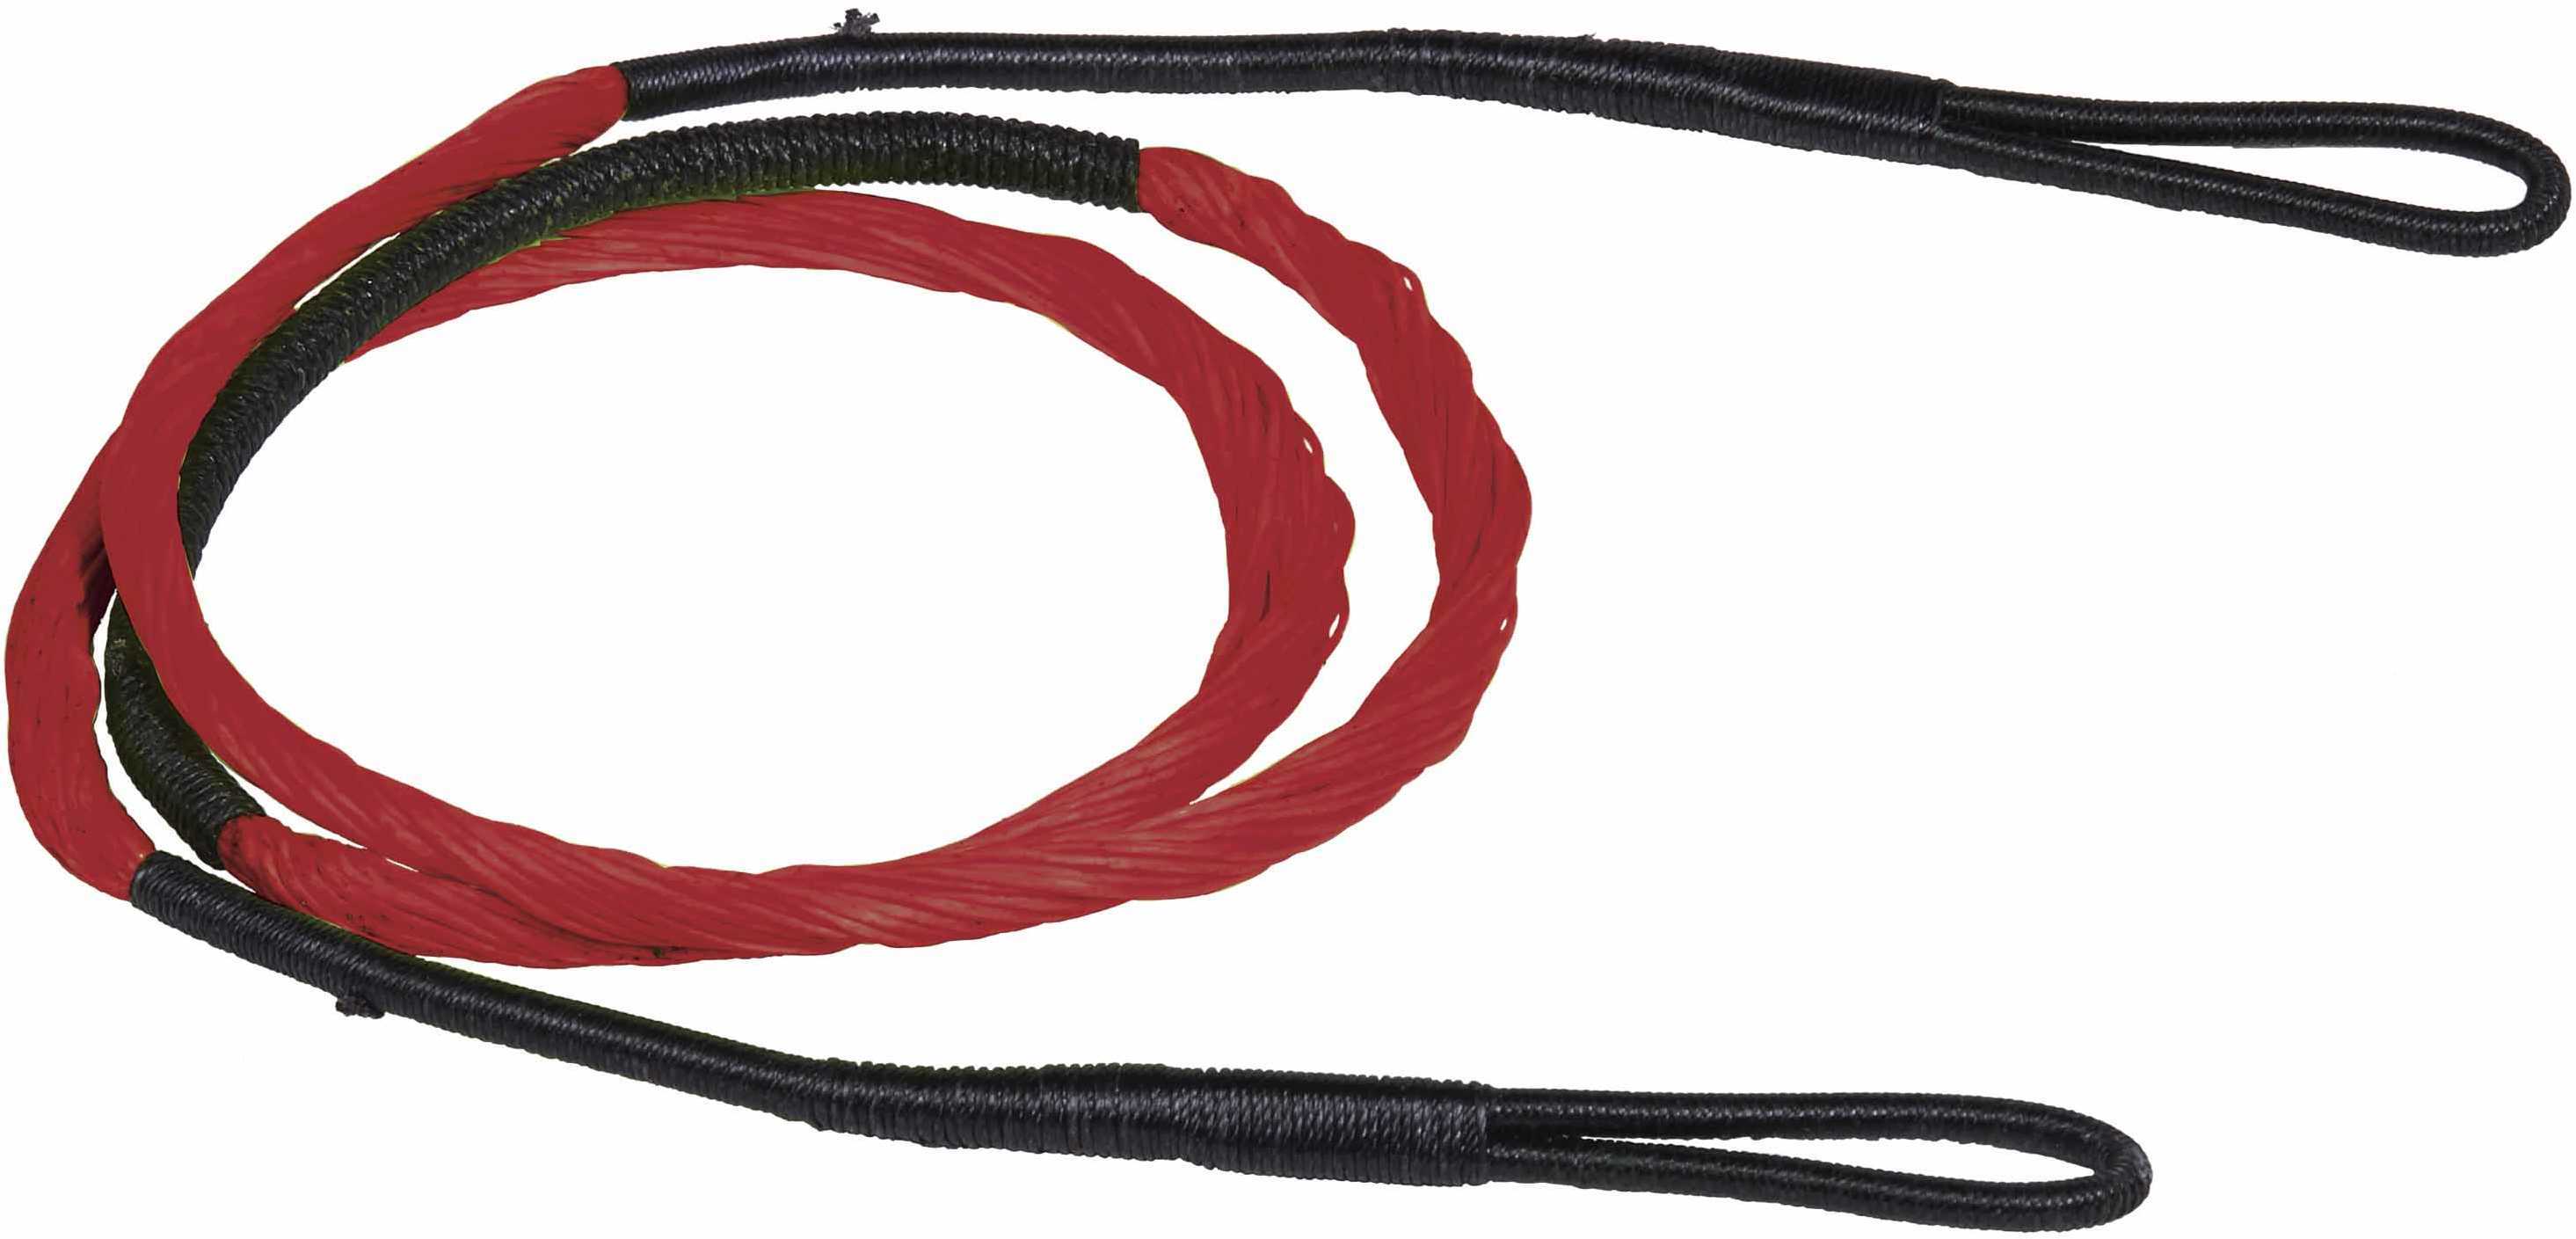 Excalibur Matrix String Red Model: 1992BR